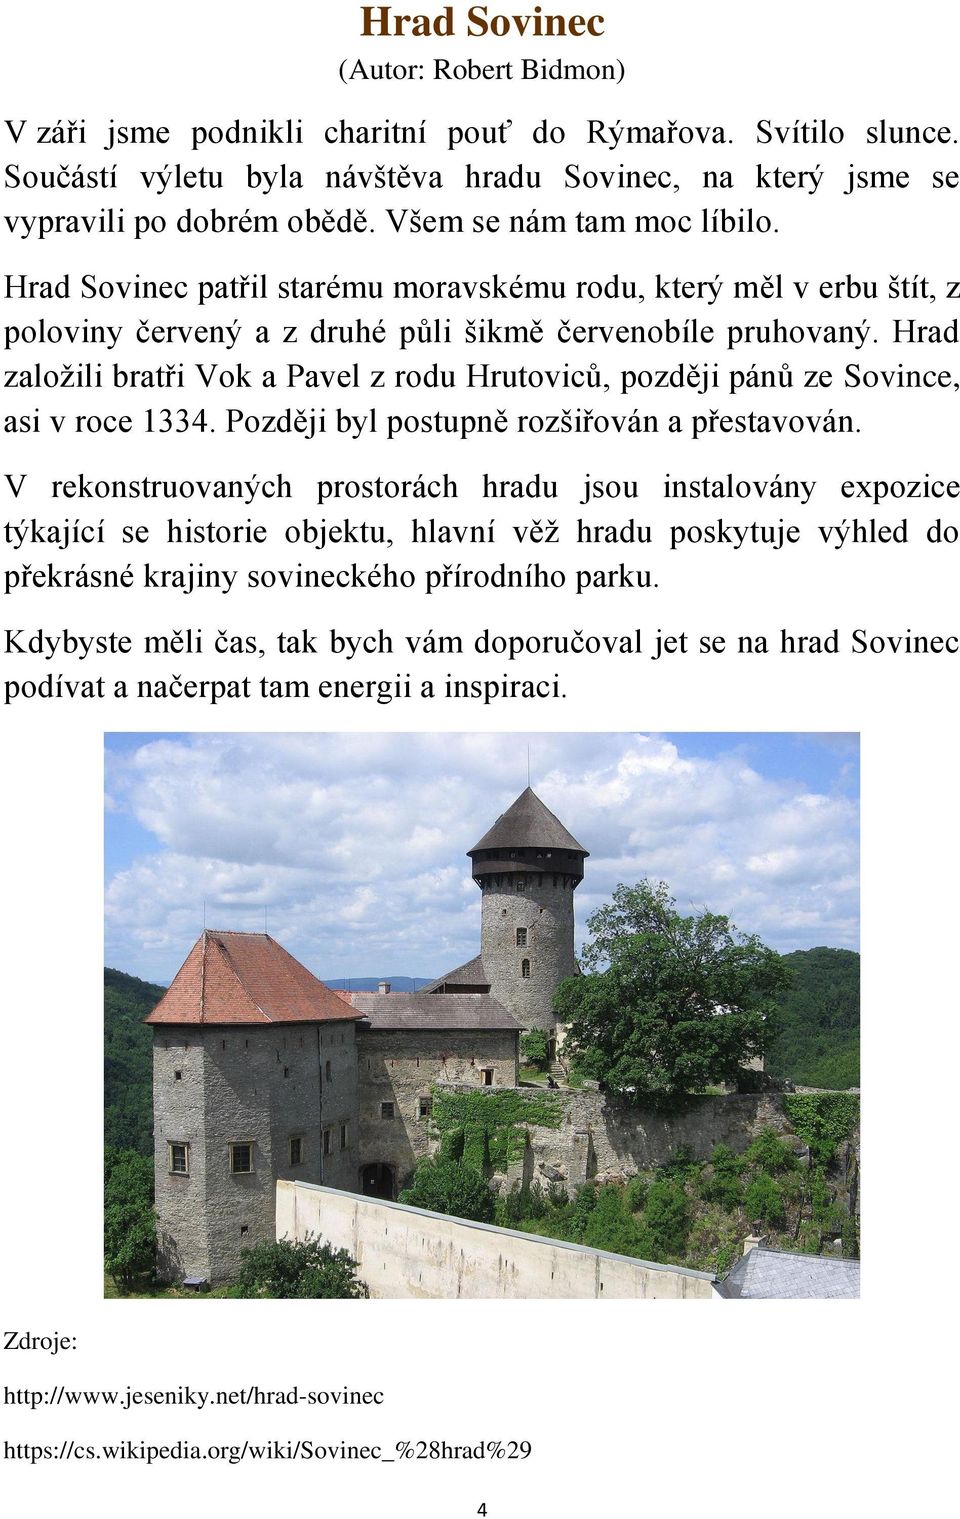 Hrad založili bratři Vok a Pavel z rodu Hrutoviců, později pánů ze Sovince, asi v roce 1334. Později byl postupně rozšiřován a přestavován.